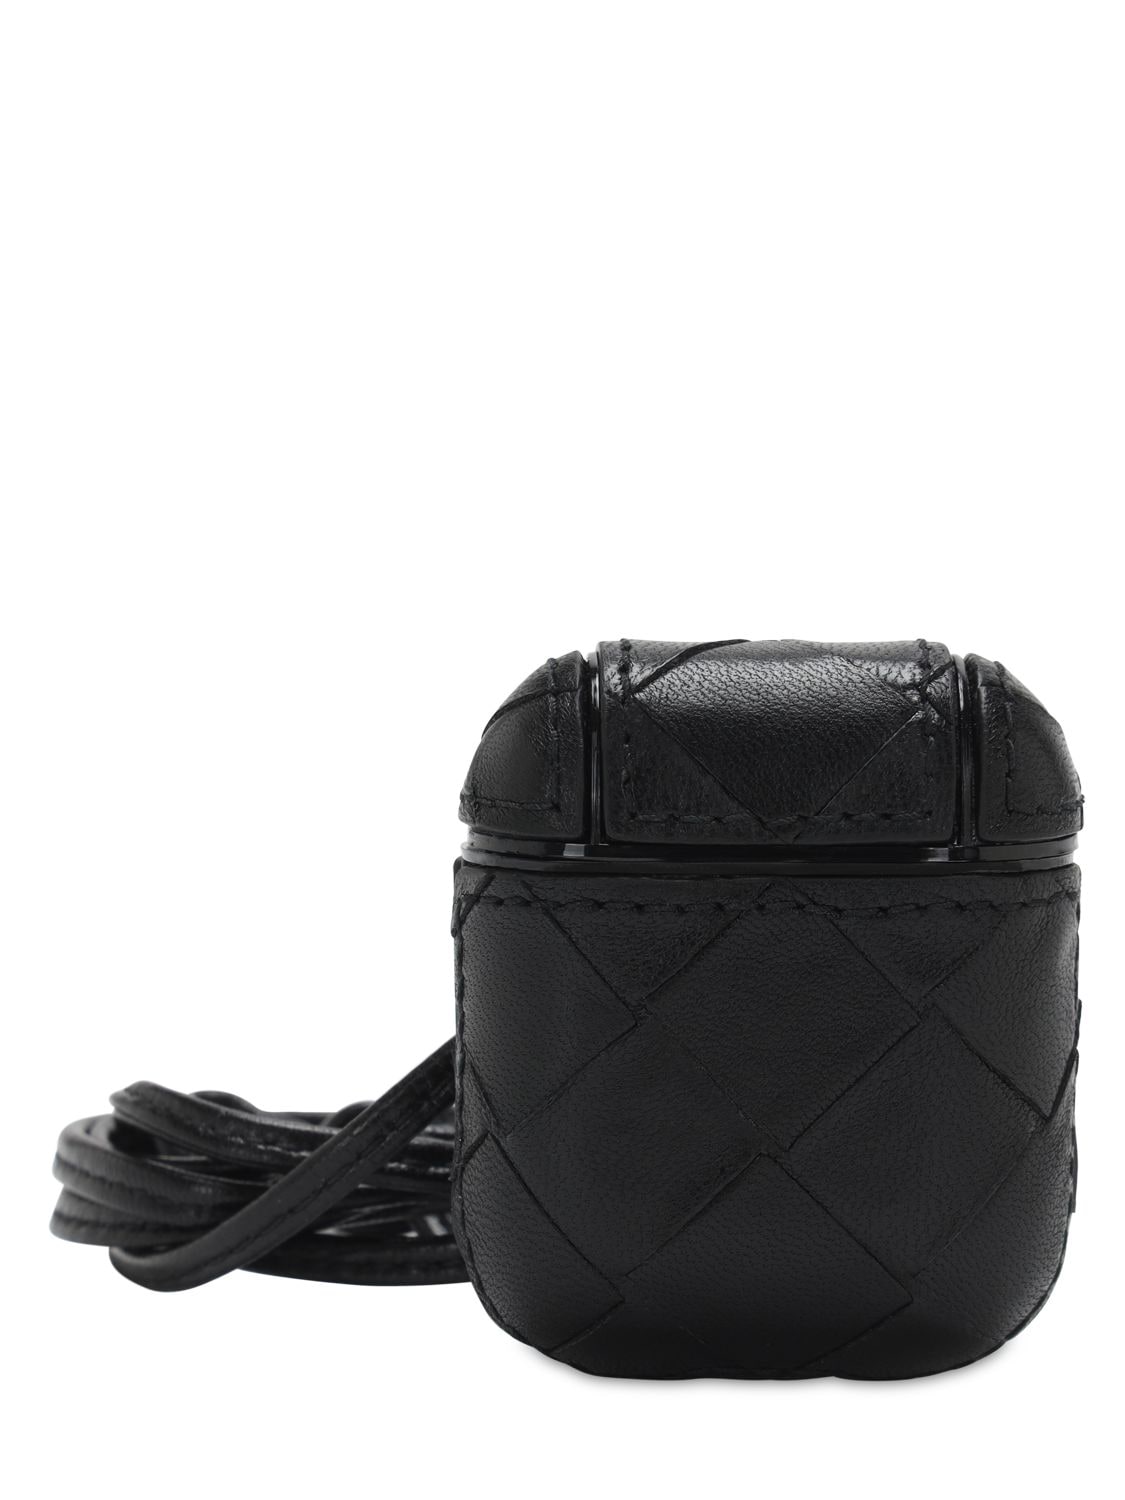 Bottega Veneta Intrecciato Leather Air Pod Case In Black